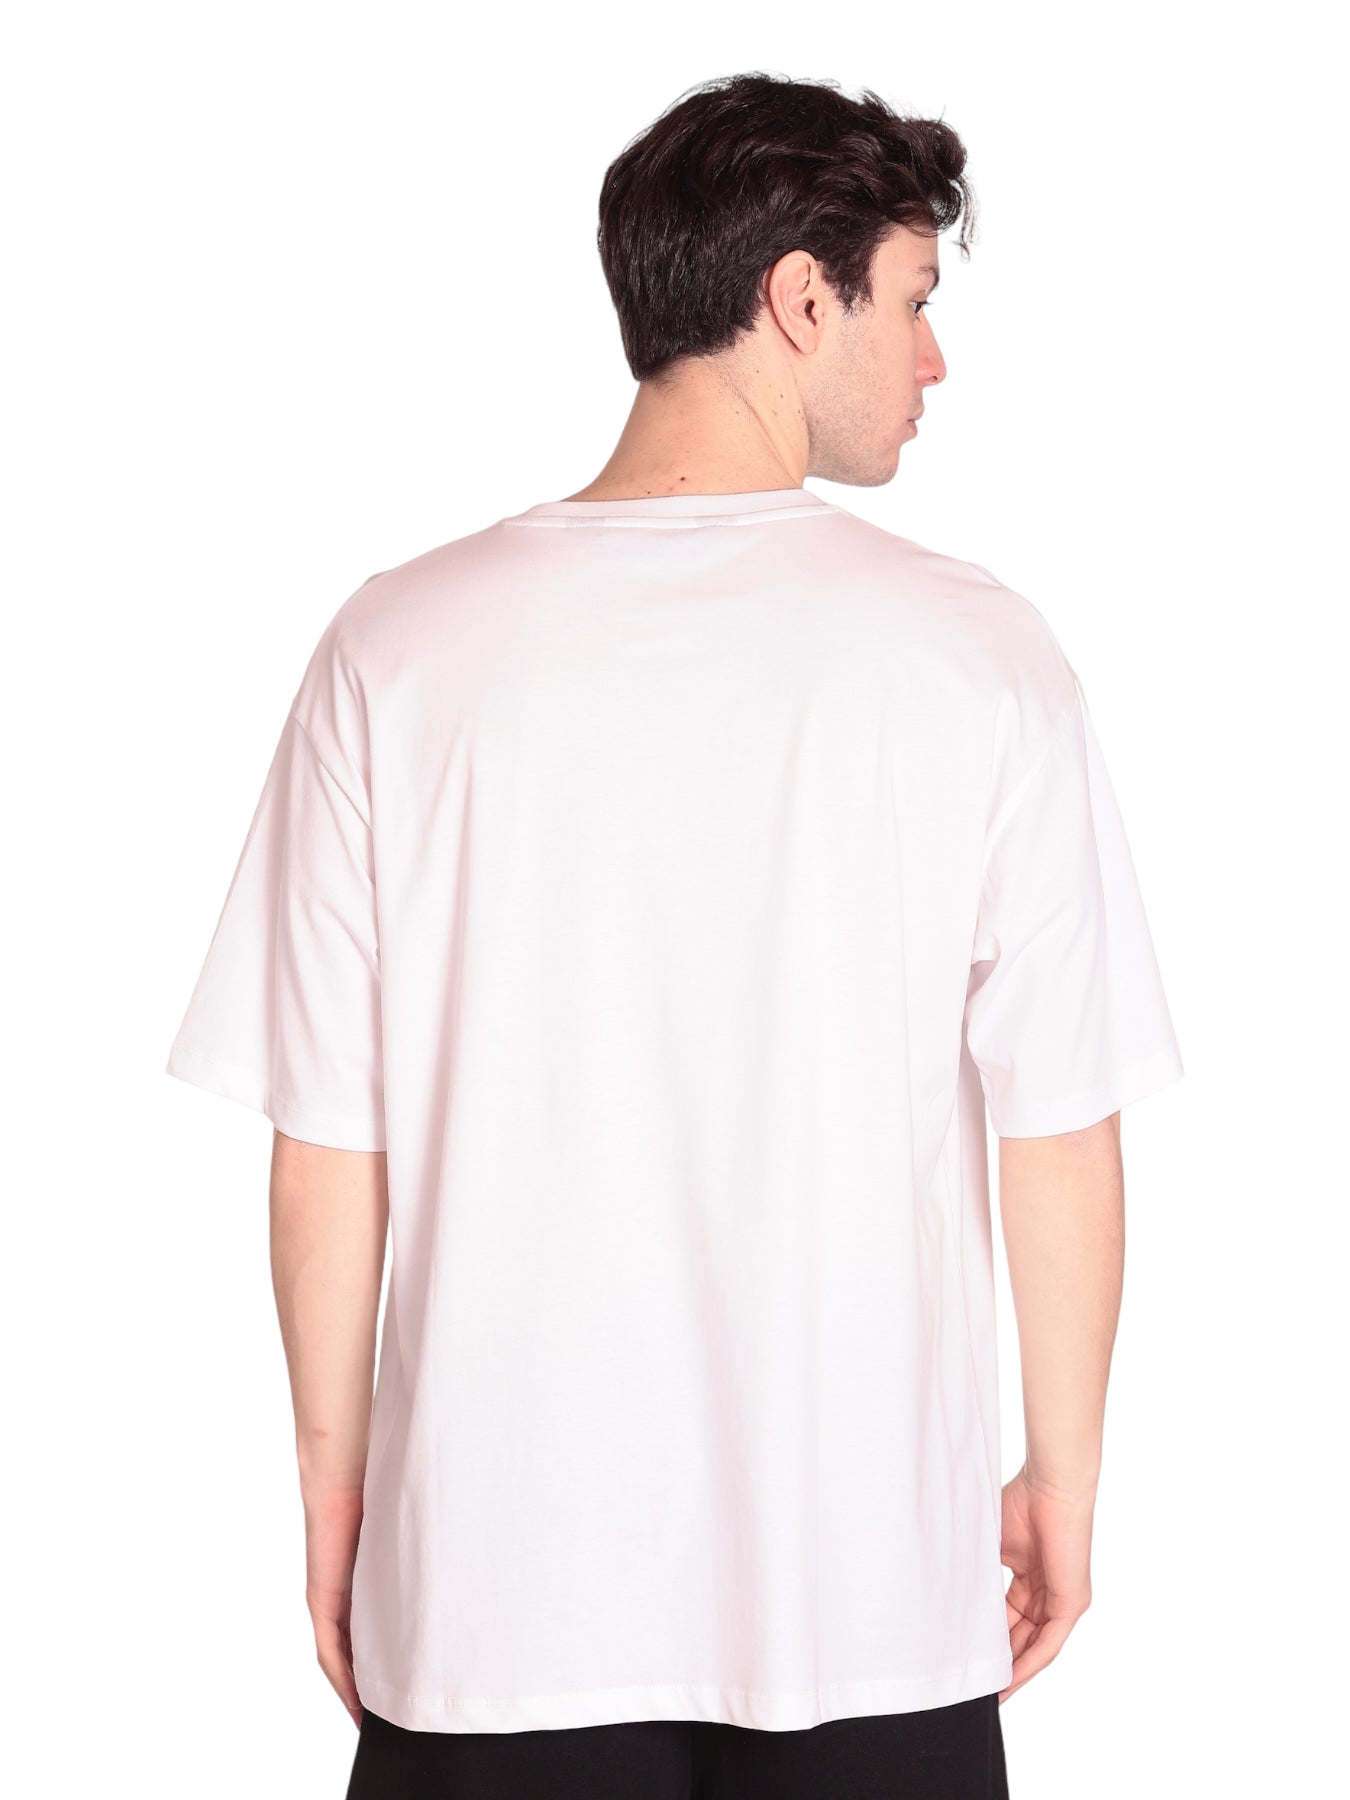 T-Shirt 74obhe00 White